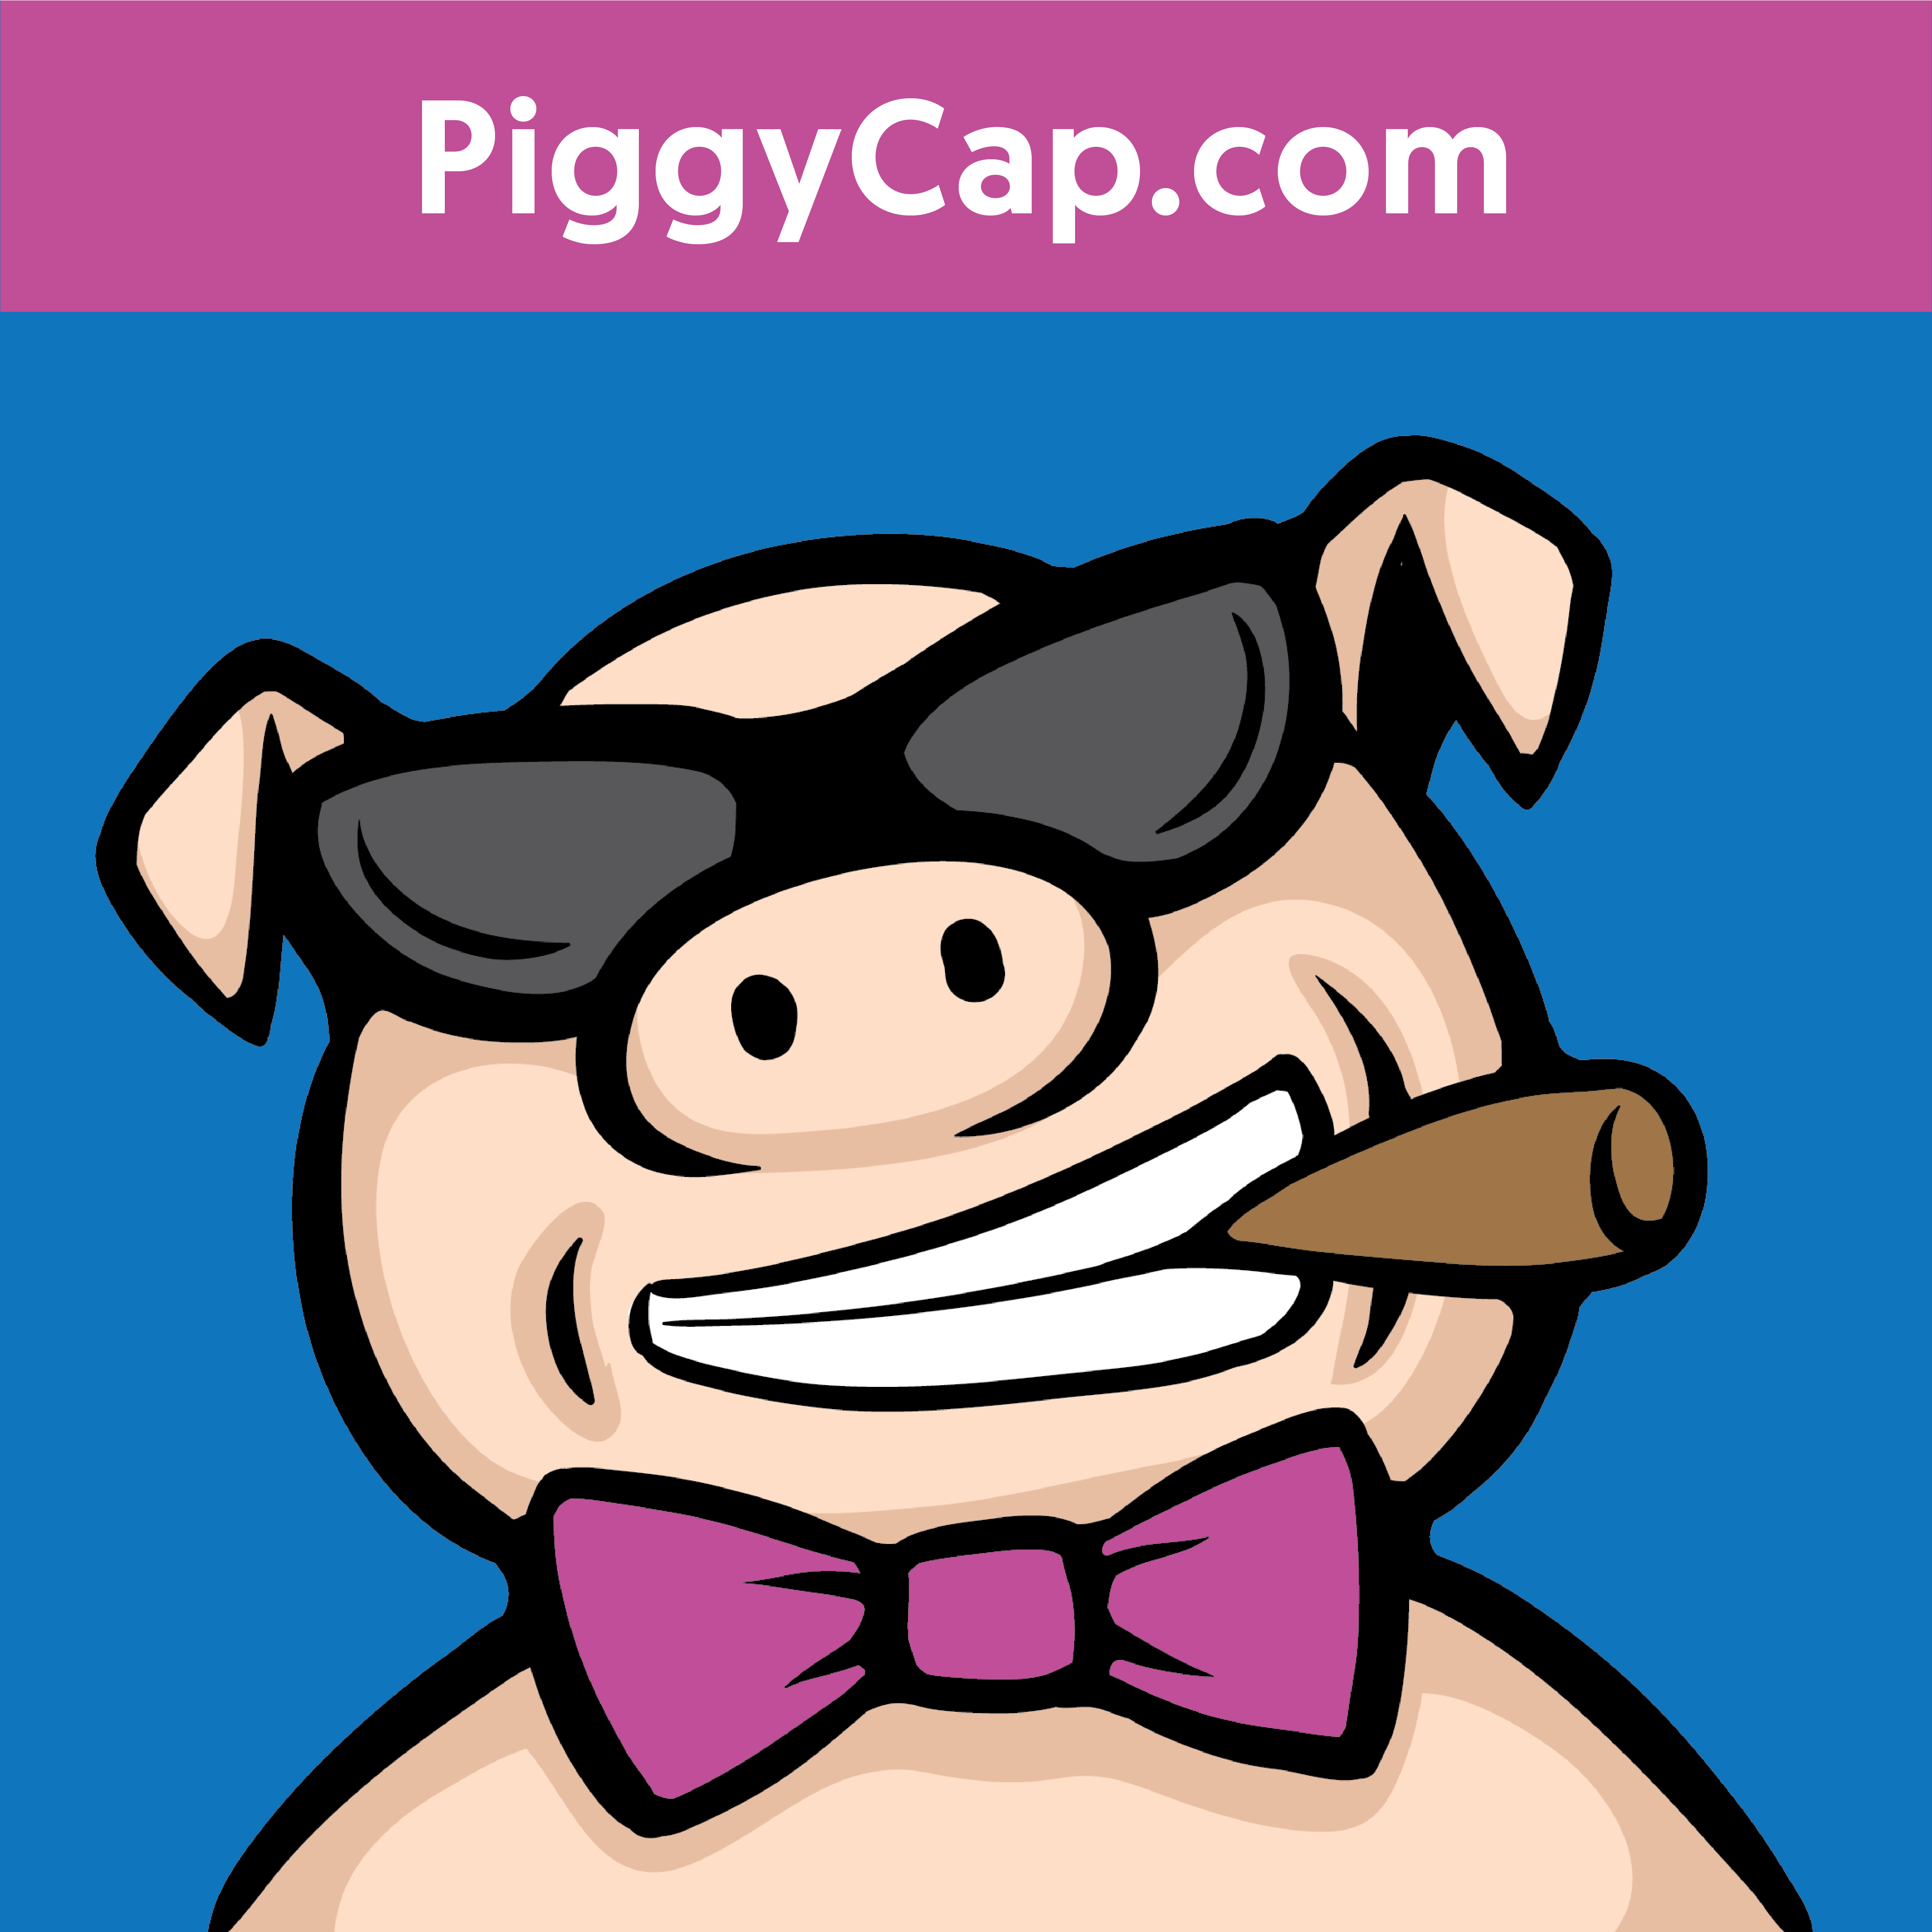 PiggyCap